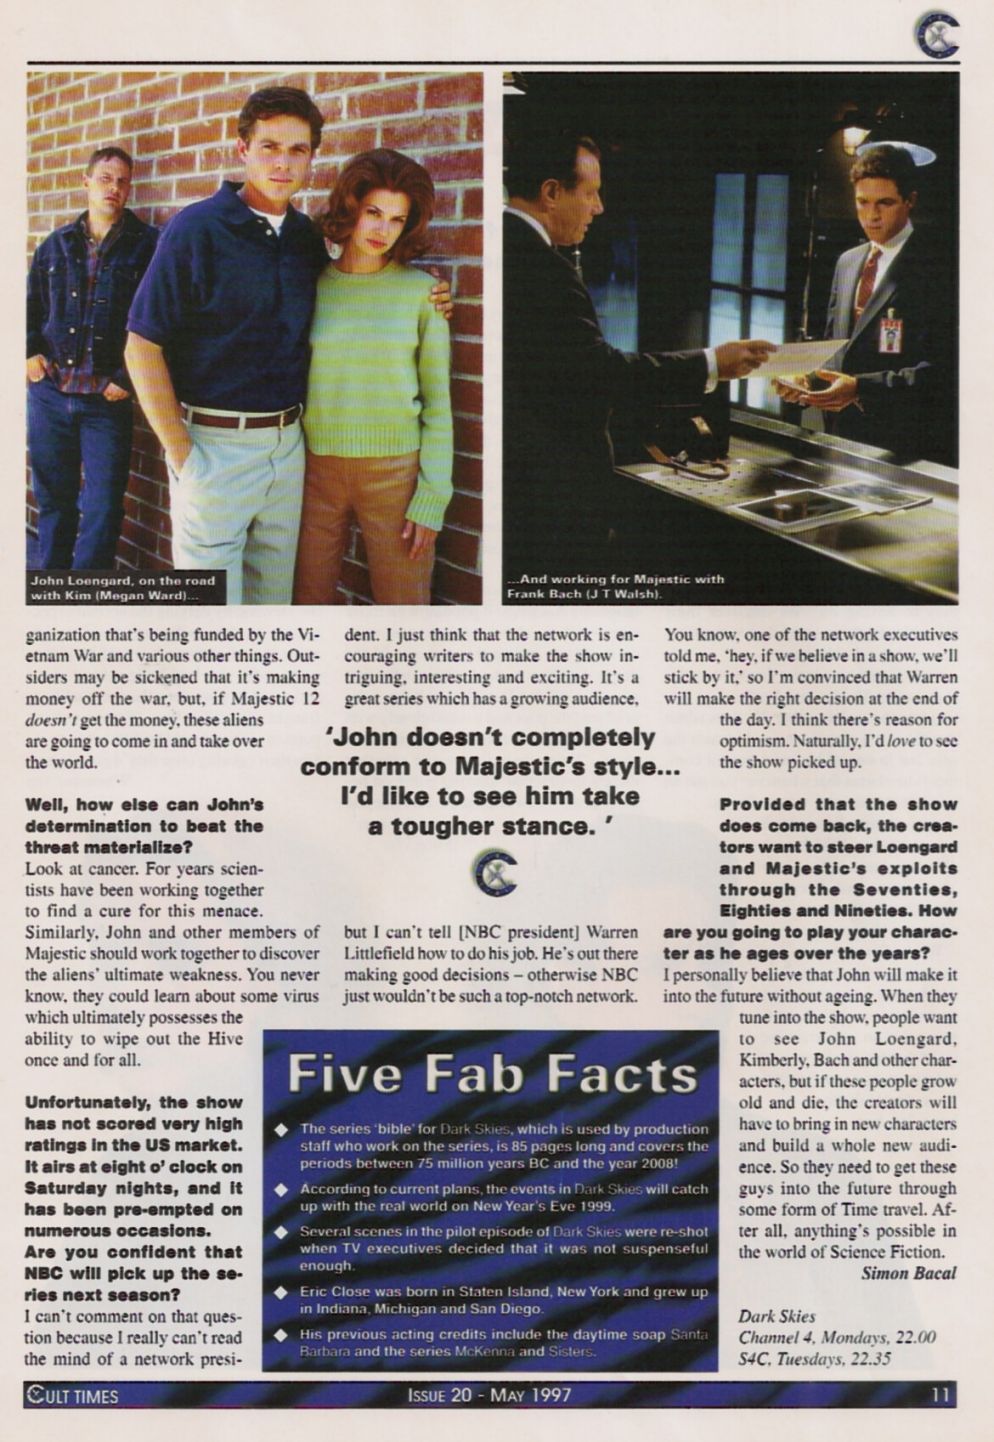 Cult Times #20 - May 1997 - Page 5
Keywords: ;dark_skies_media